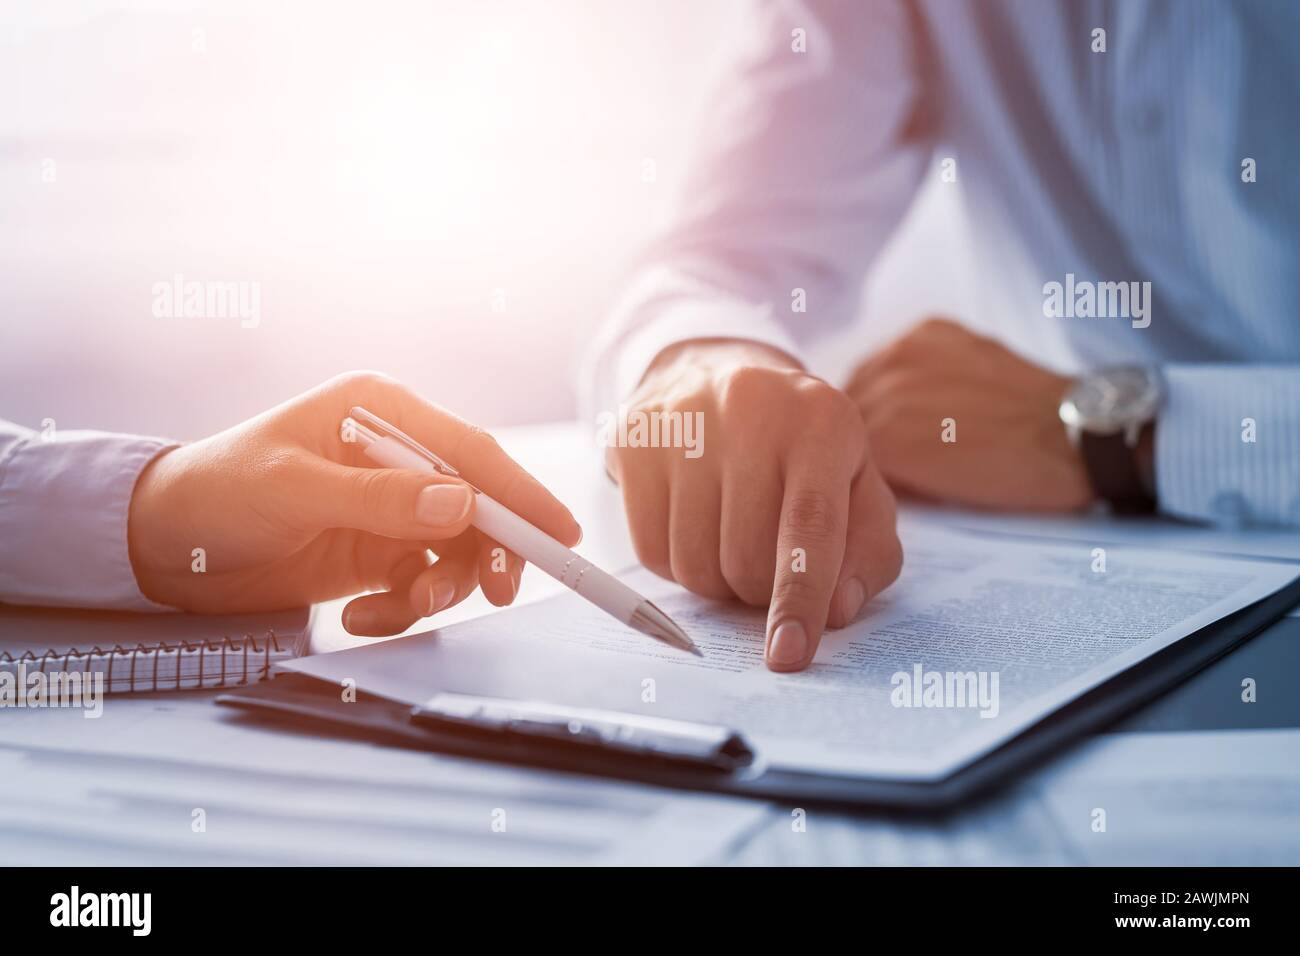 Geschäftsleute, die einen Vertrag aushandeln. Menschliche Hände, die mit Dokumenten am Schreibtisch arbeiten und einen Vertrag unterzeichnen. Stockfoto